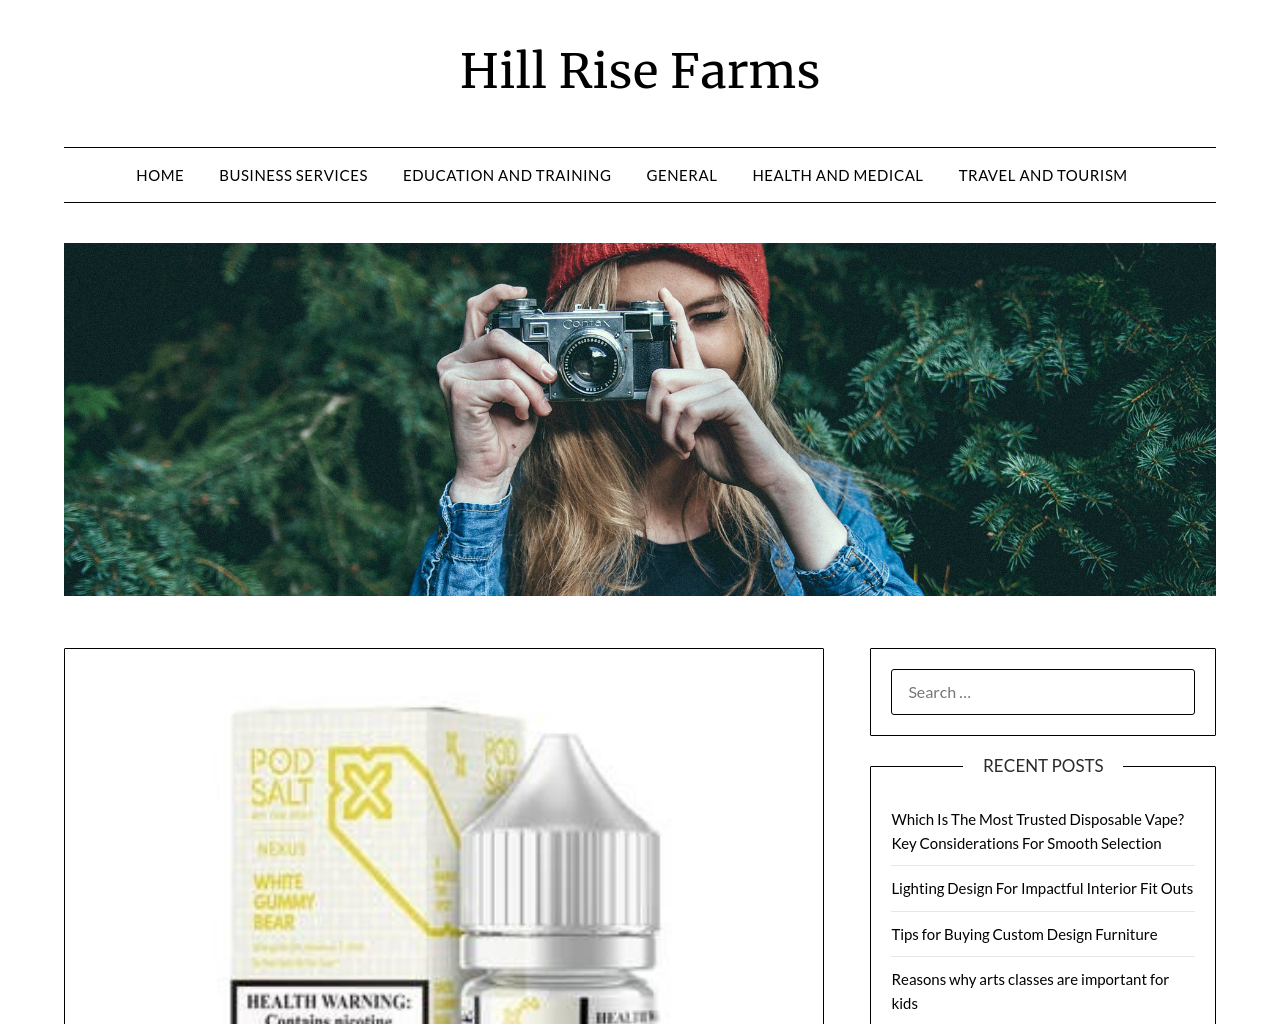 hillrisefarms.com